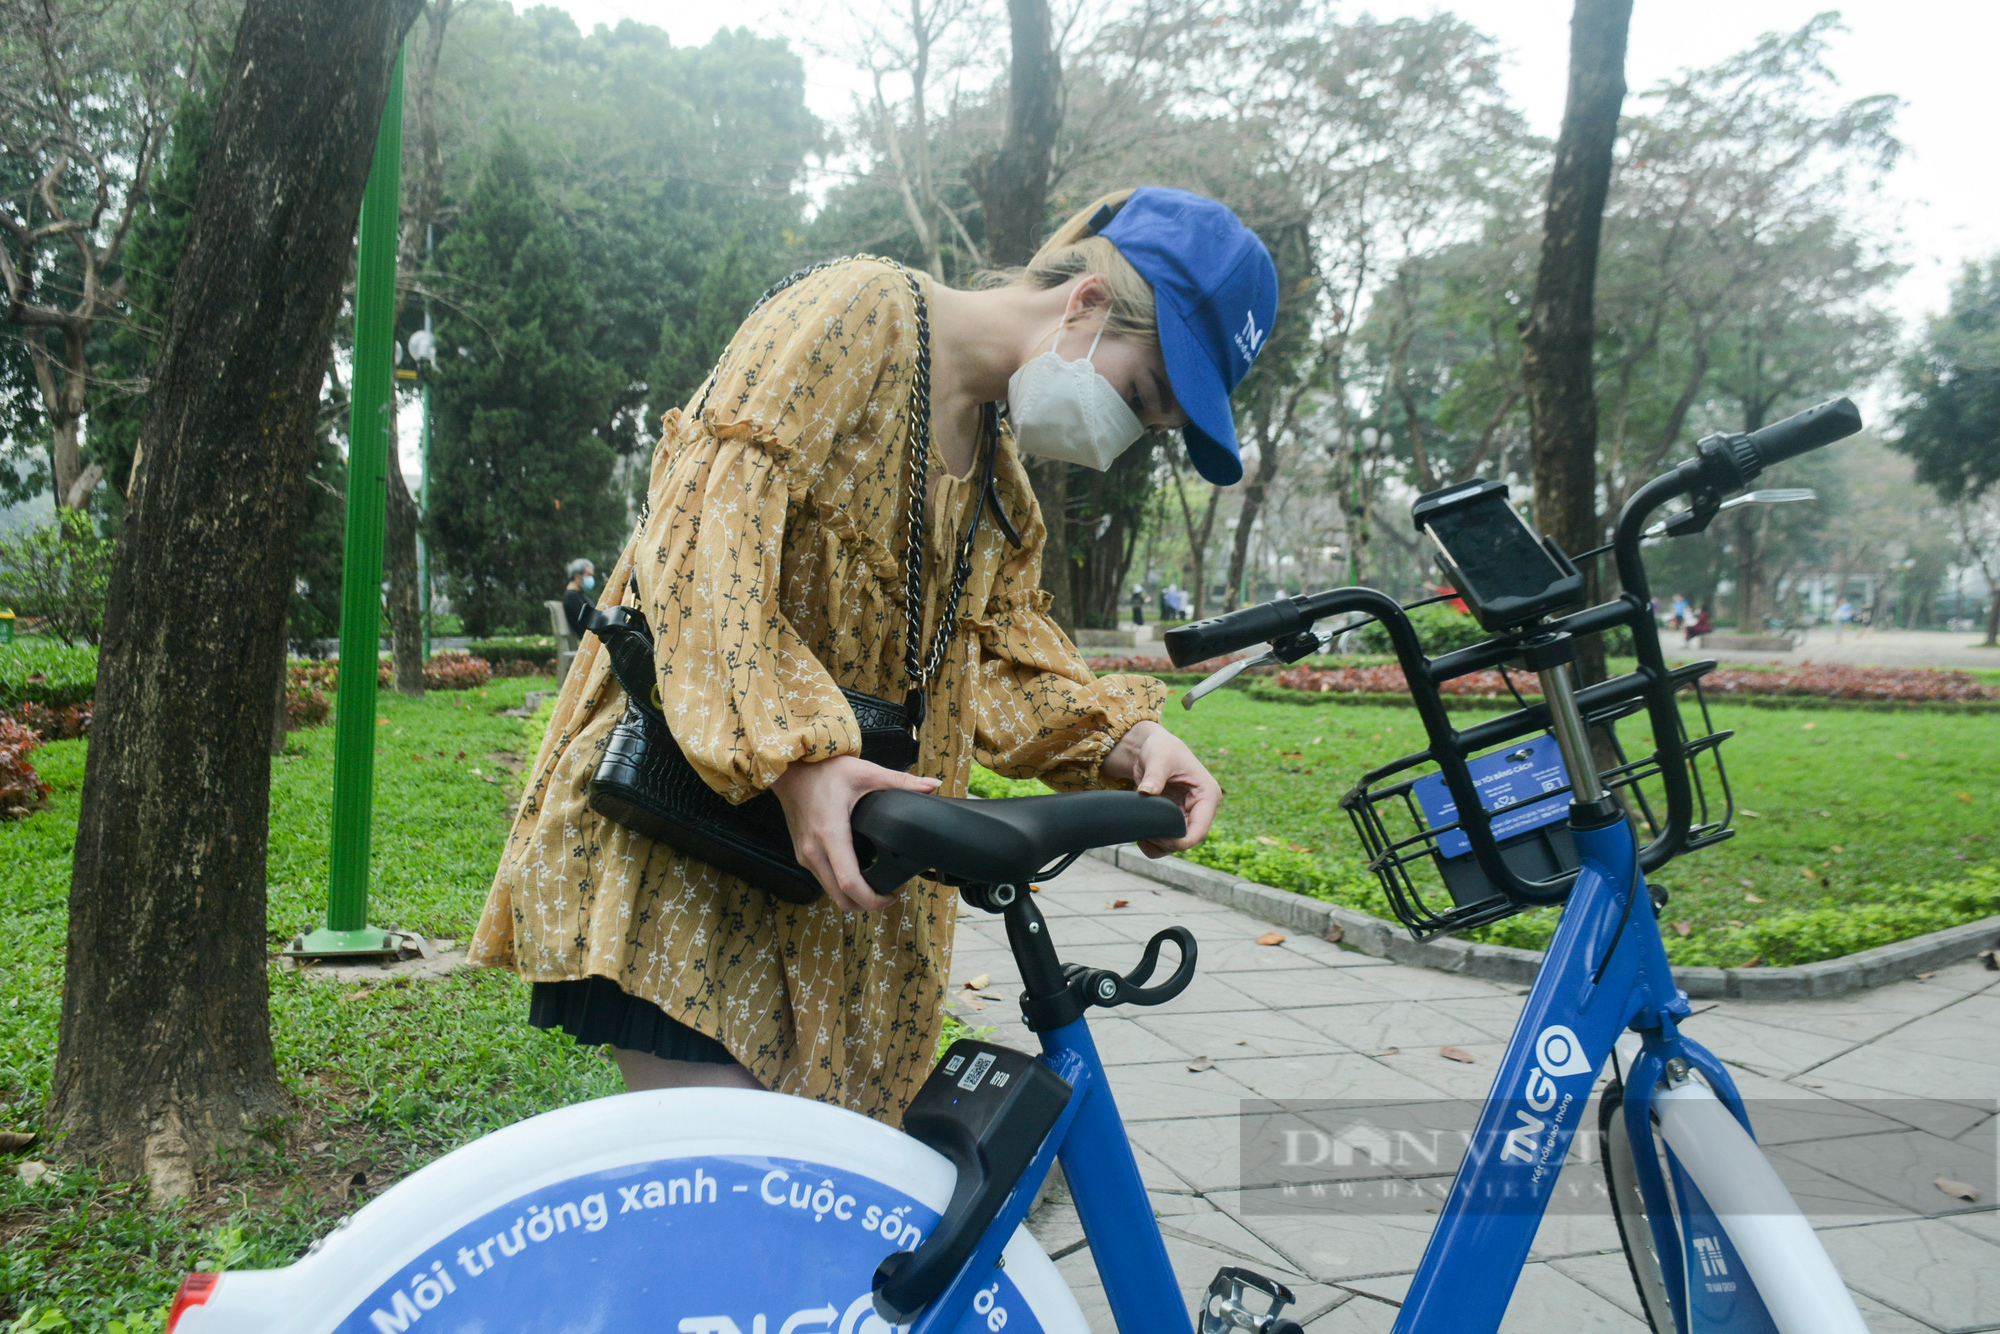 Cận cảnh xe đạp công cộng ngập tính năng hiện đại sắp được cho thuê tại Hà Nội - Ảnh 4.